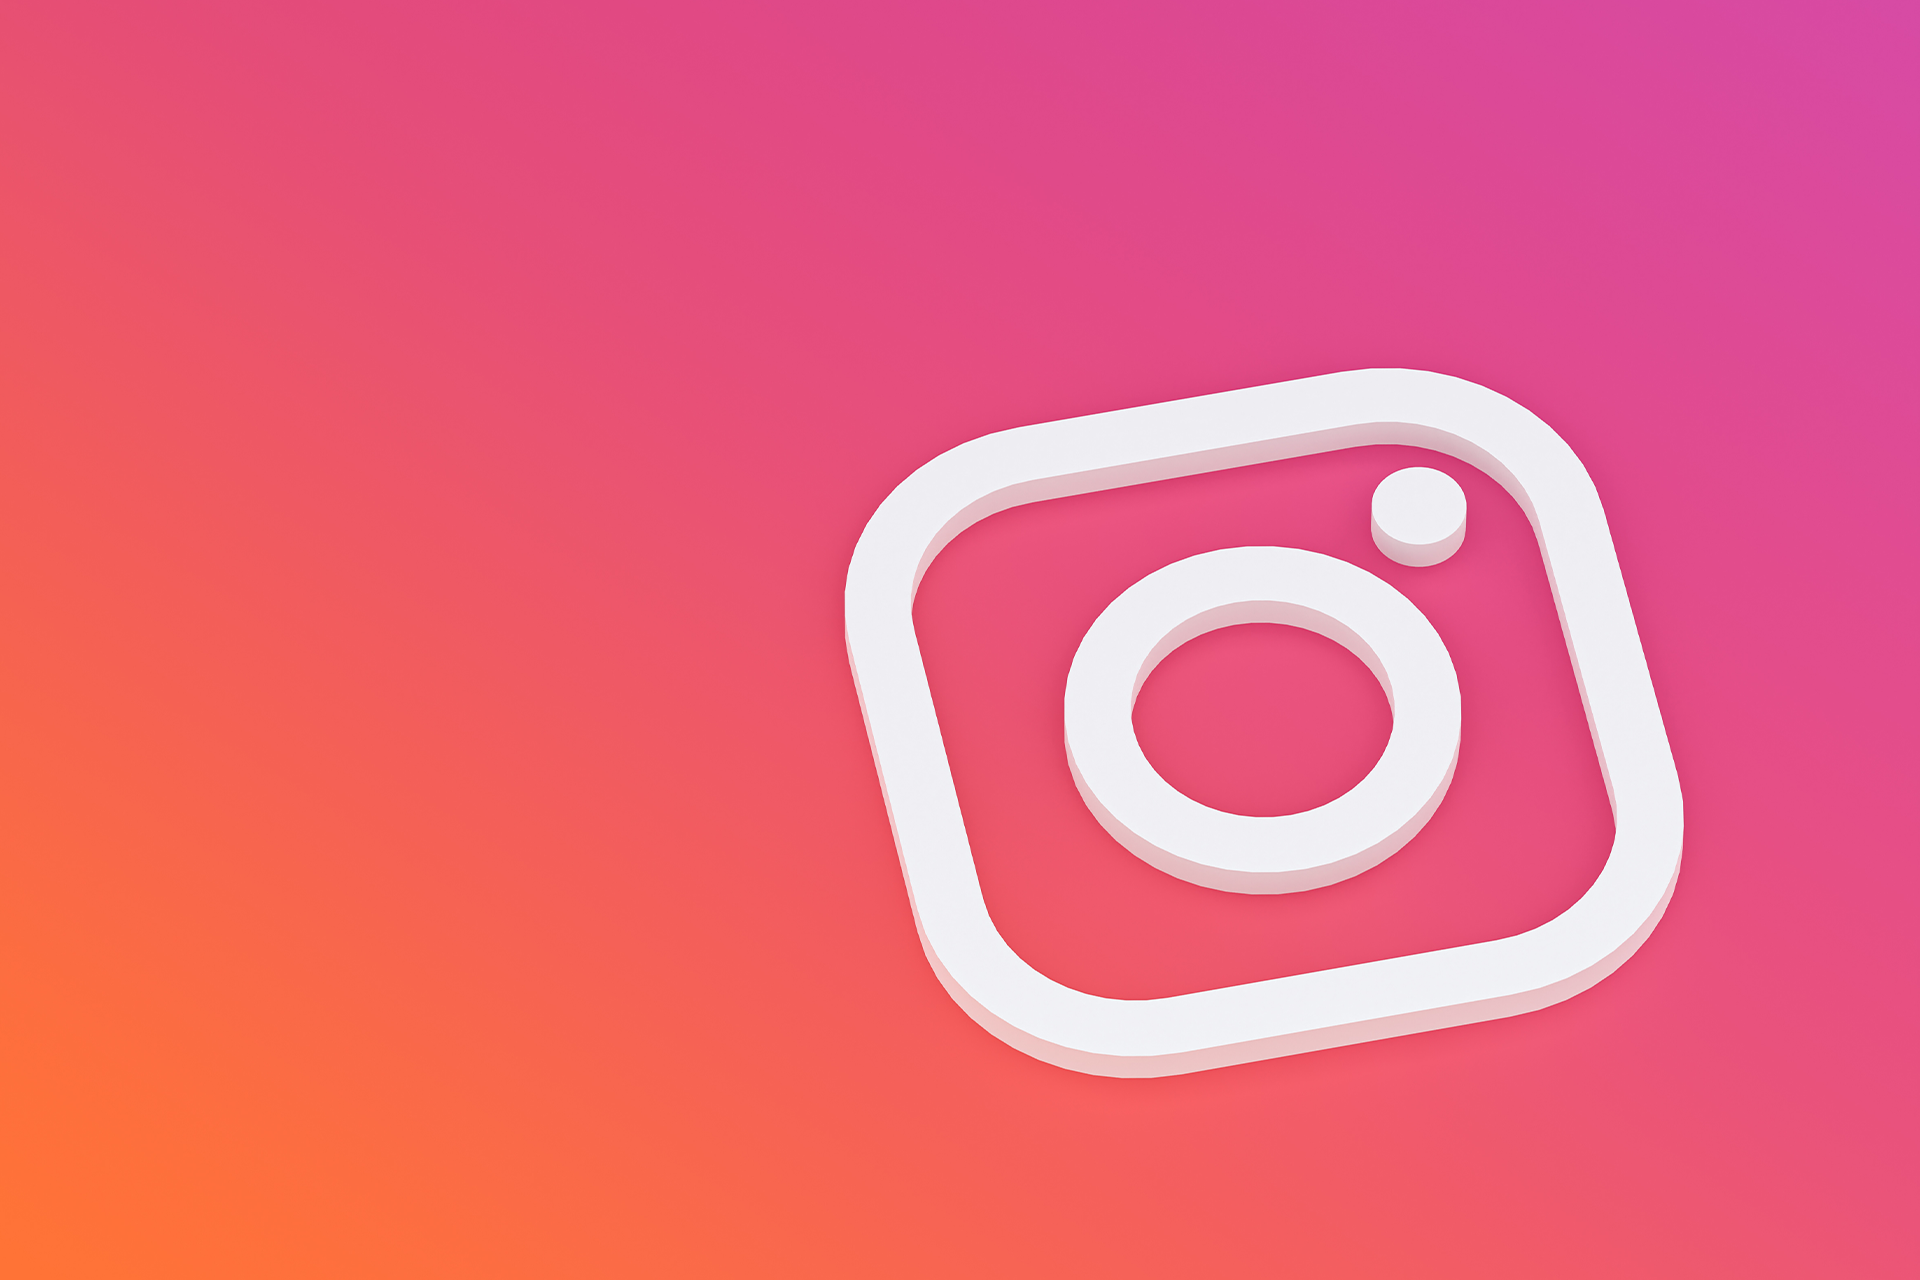 Un logo Instagram blanc posé sur un fond couleur orange, violet et rouge caractéristique du réseau social.